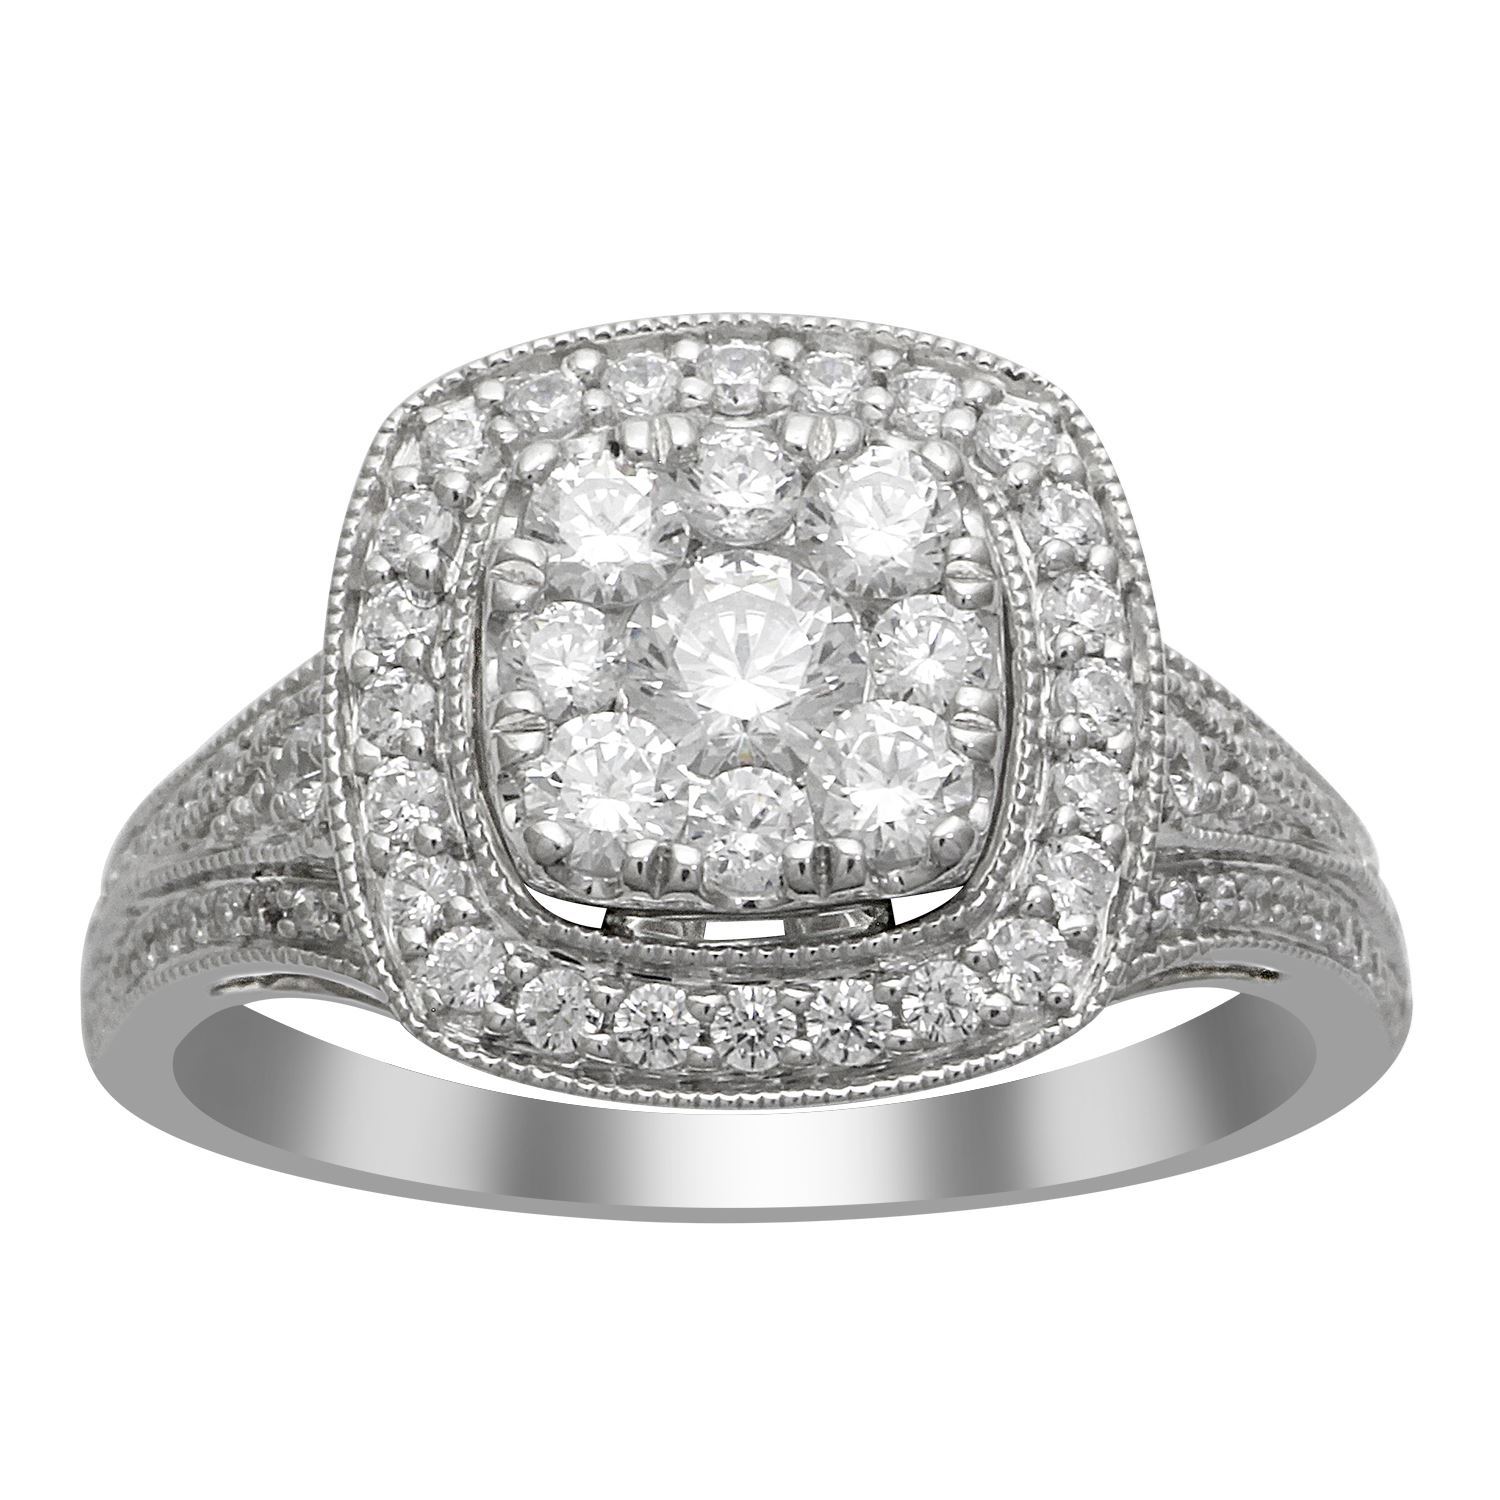 0004904_100ct-rd-diamonds-set-in-14kt-white-gold-ladies-ring.jpeg